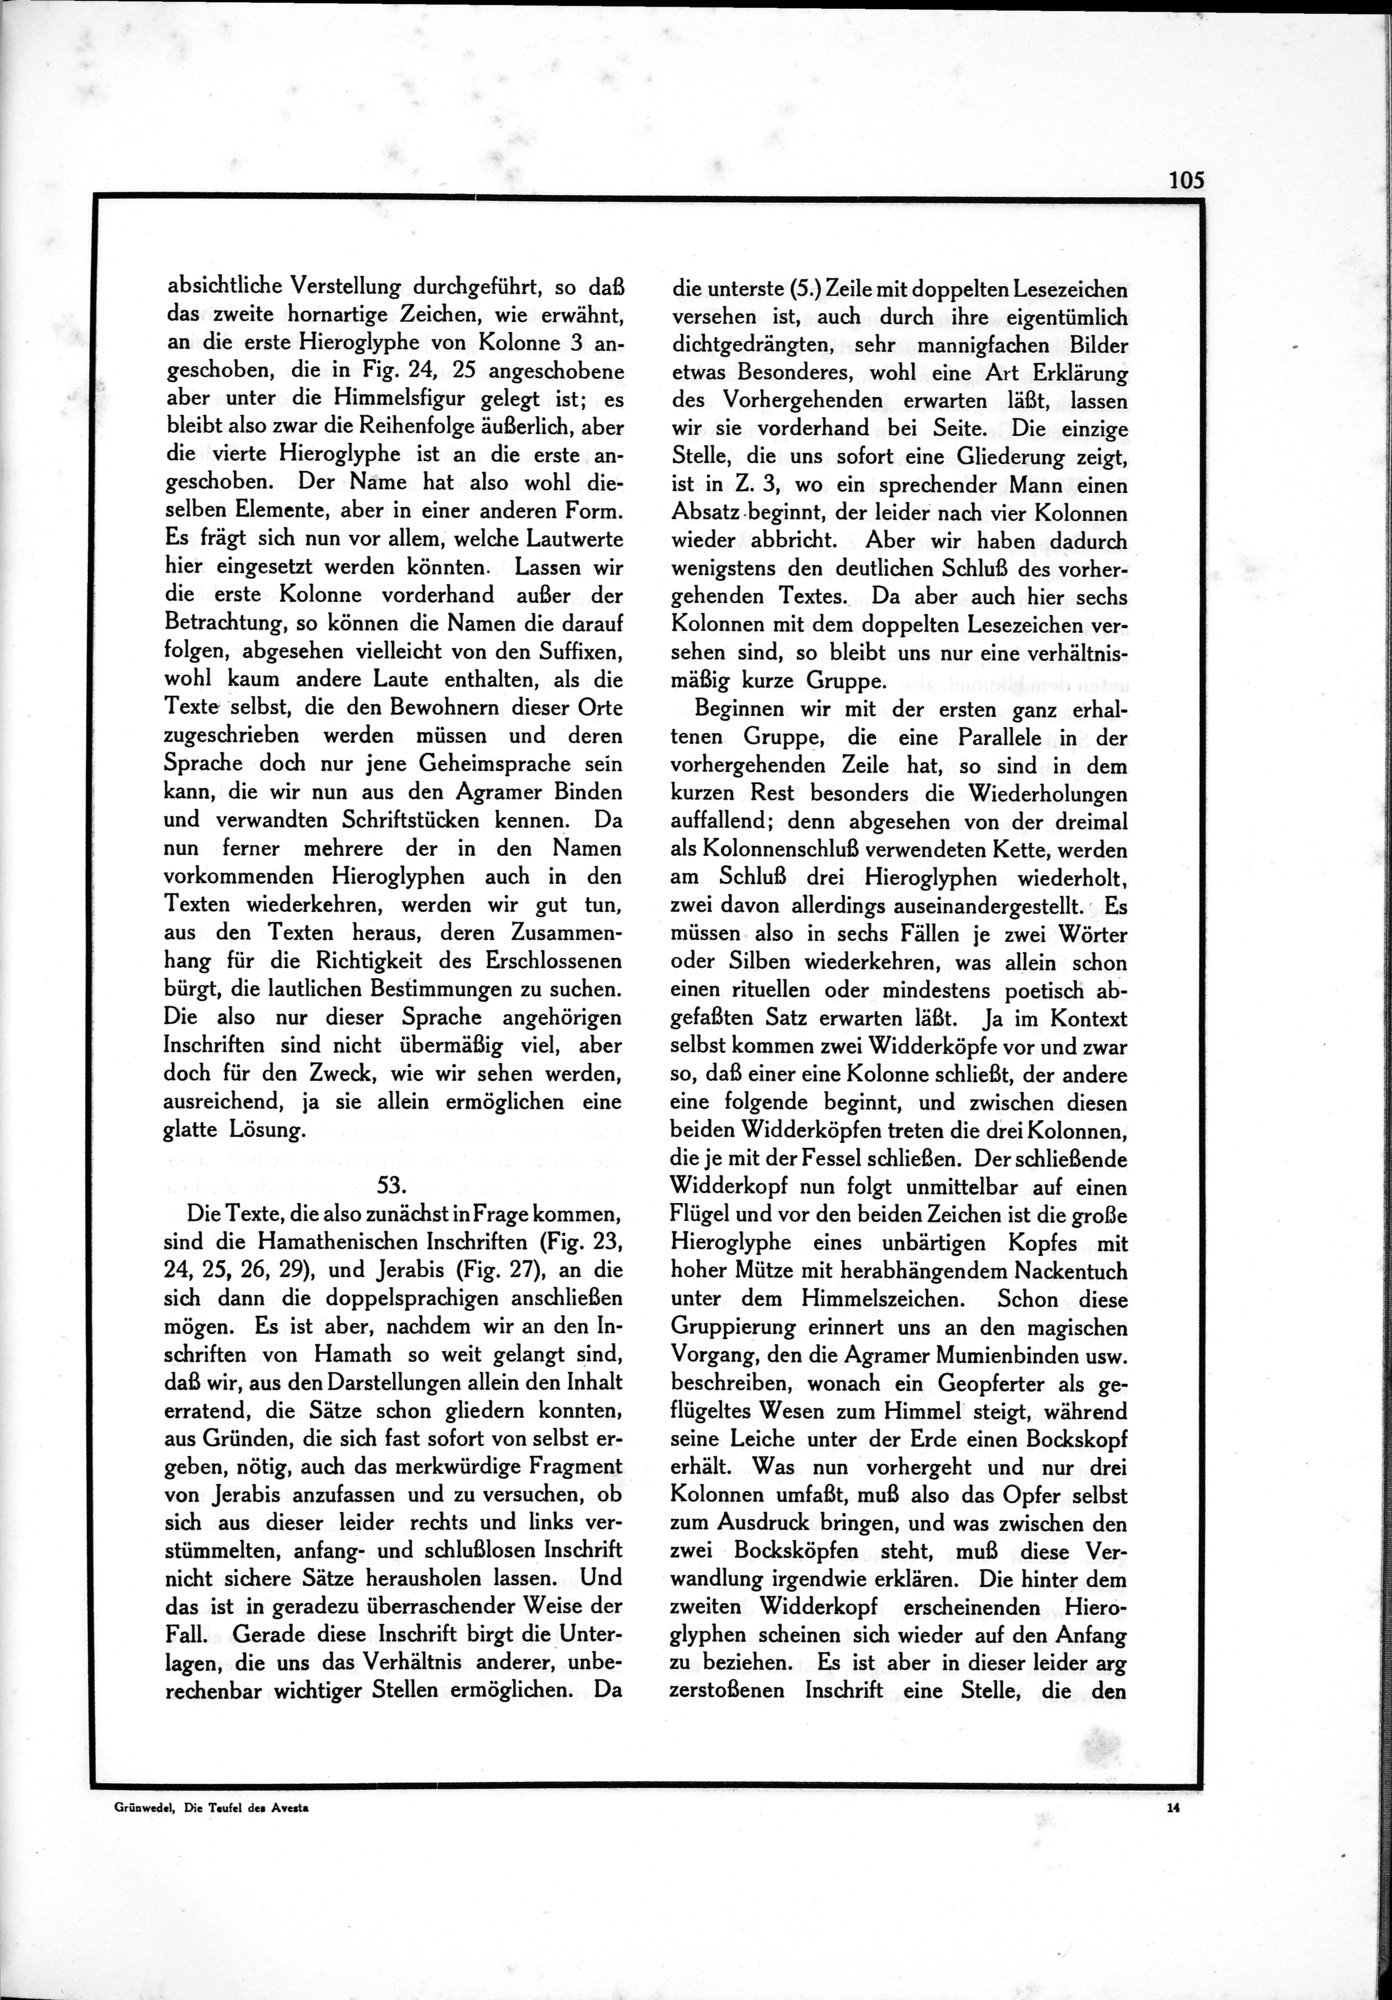 Die Teufel des Avesta und Ihre Beziehungen zur Ikonographie des Buddhismus Zentral-Asiens : vol.1 / Page 109 (Grayscale High Resolution Image)